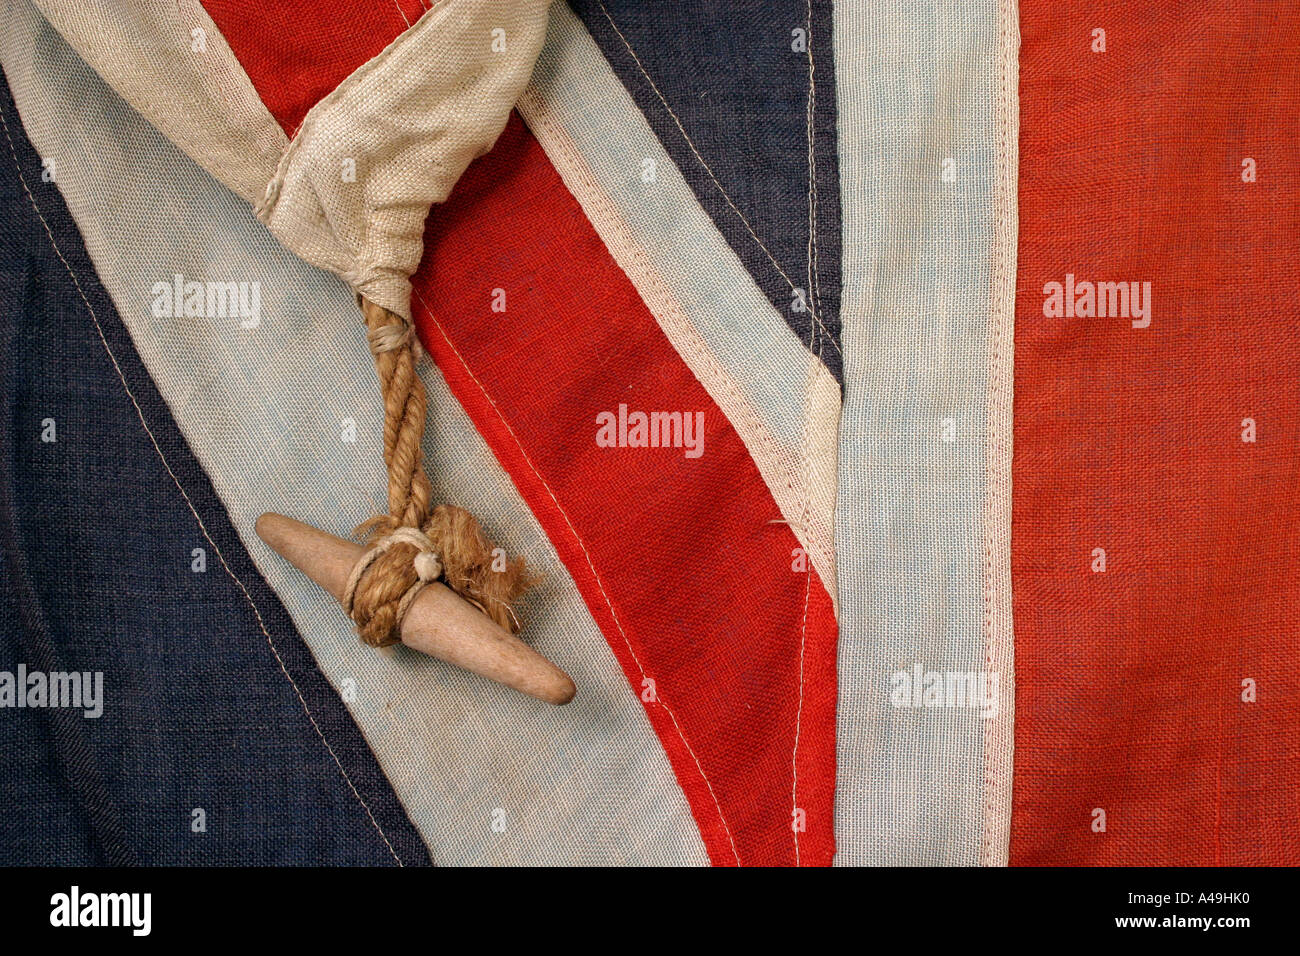 union jack british flag Stock Photo